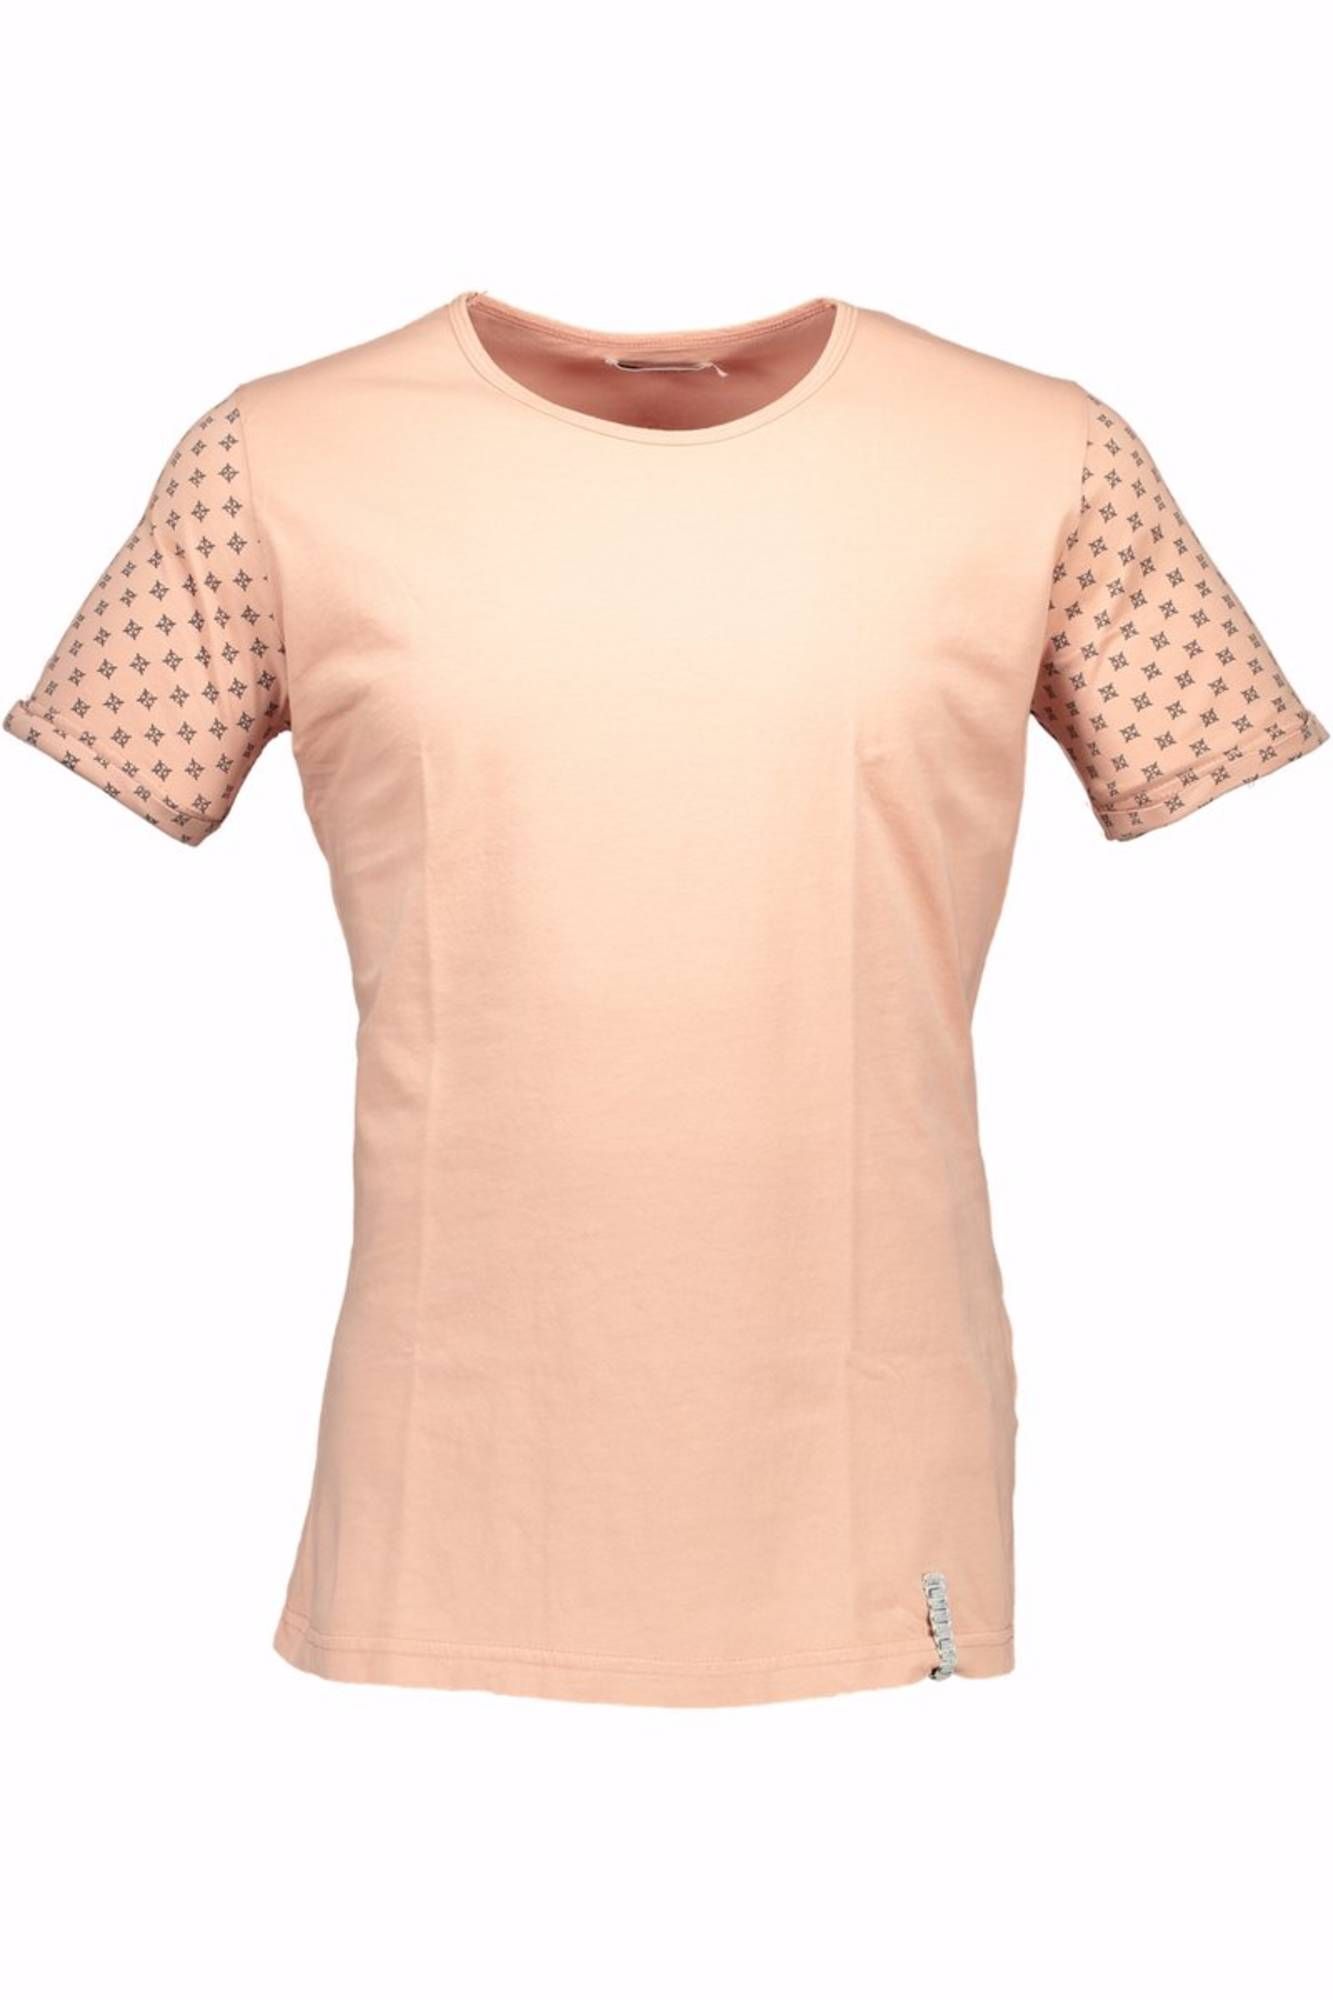 Tričko PRIMO EMPORIO tričko s krátkým rukávem ROSA